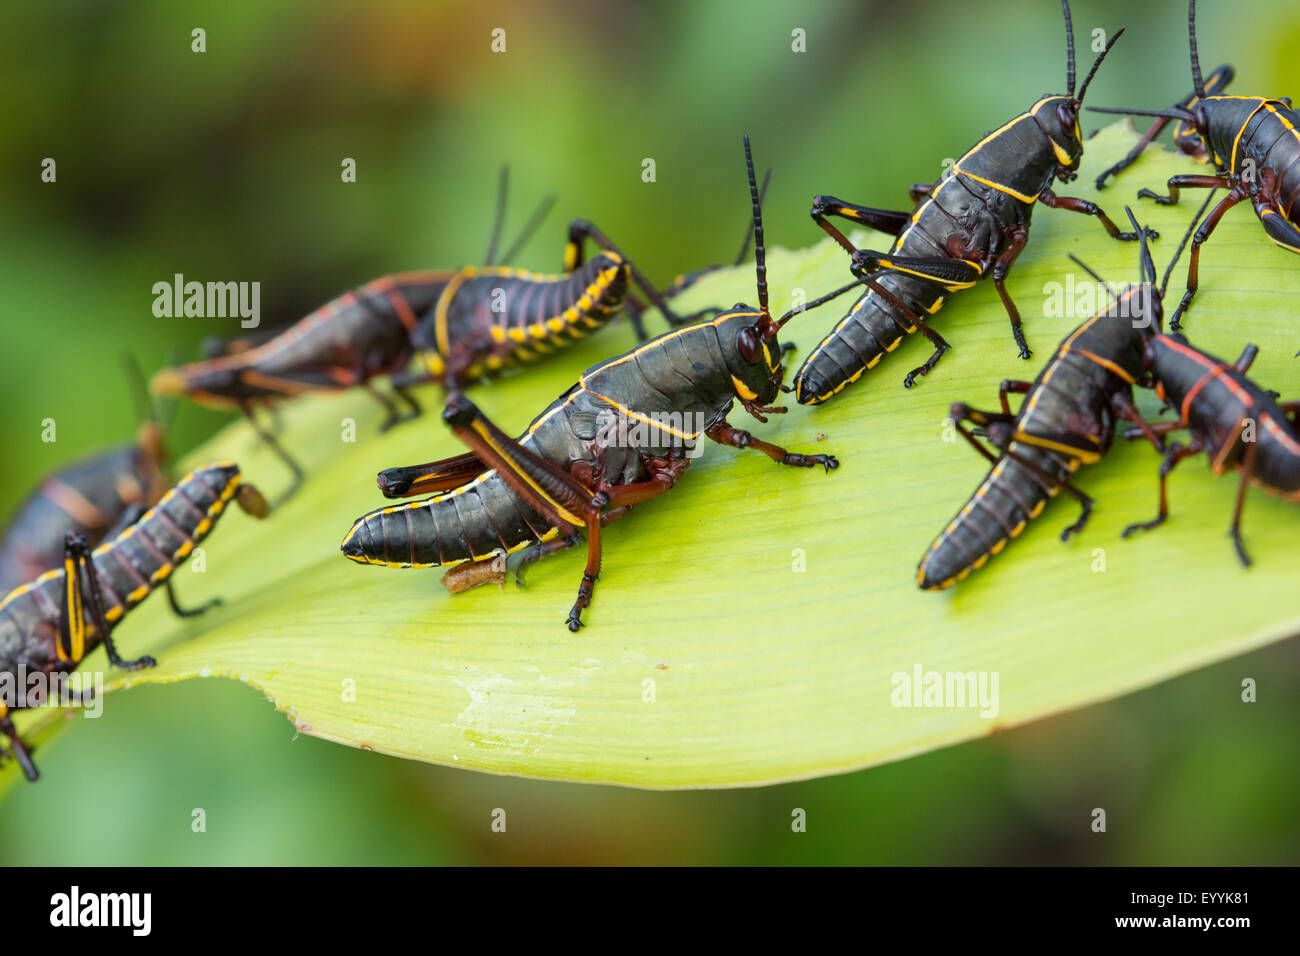 Eastern lubber grasshopper (Romalea microptera), plusieurs sur l'alimentation des plantes, USA, Floride Banque D'Images